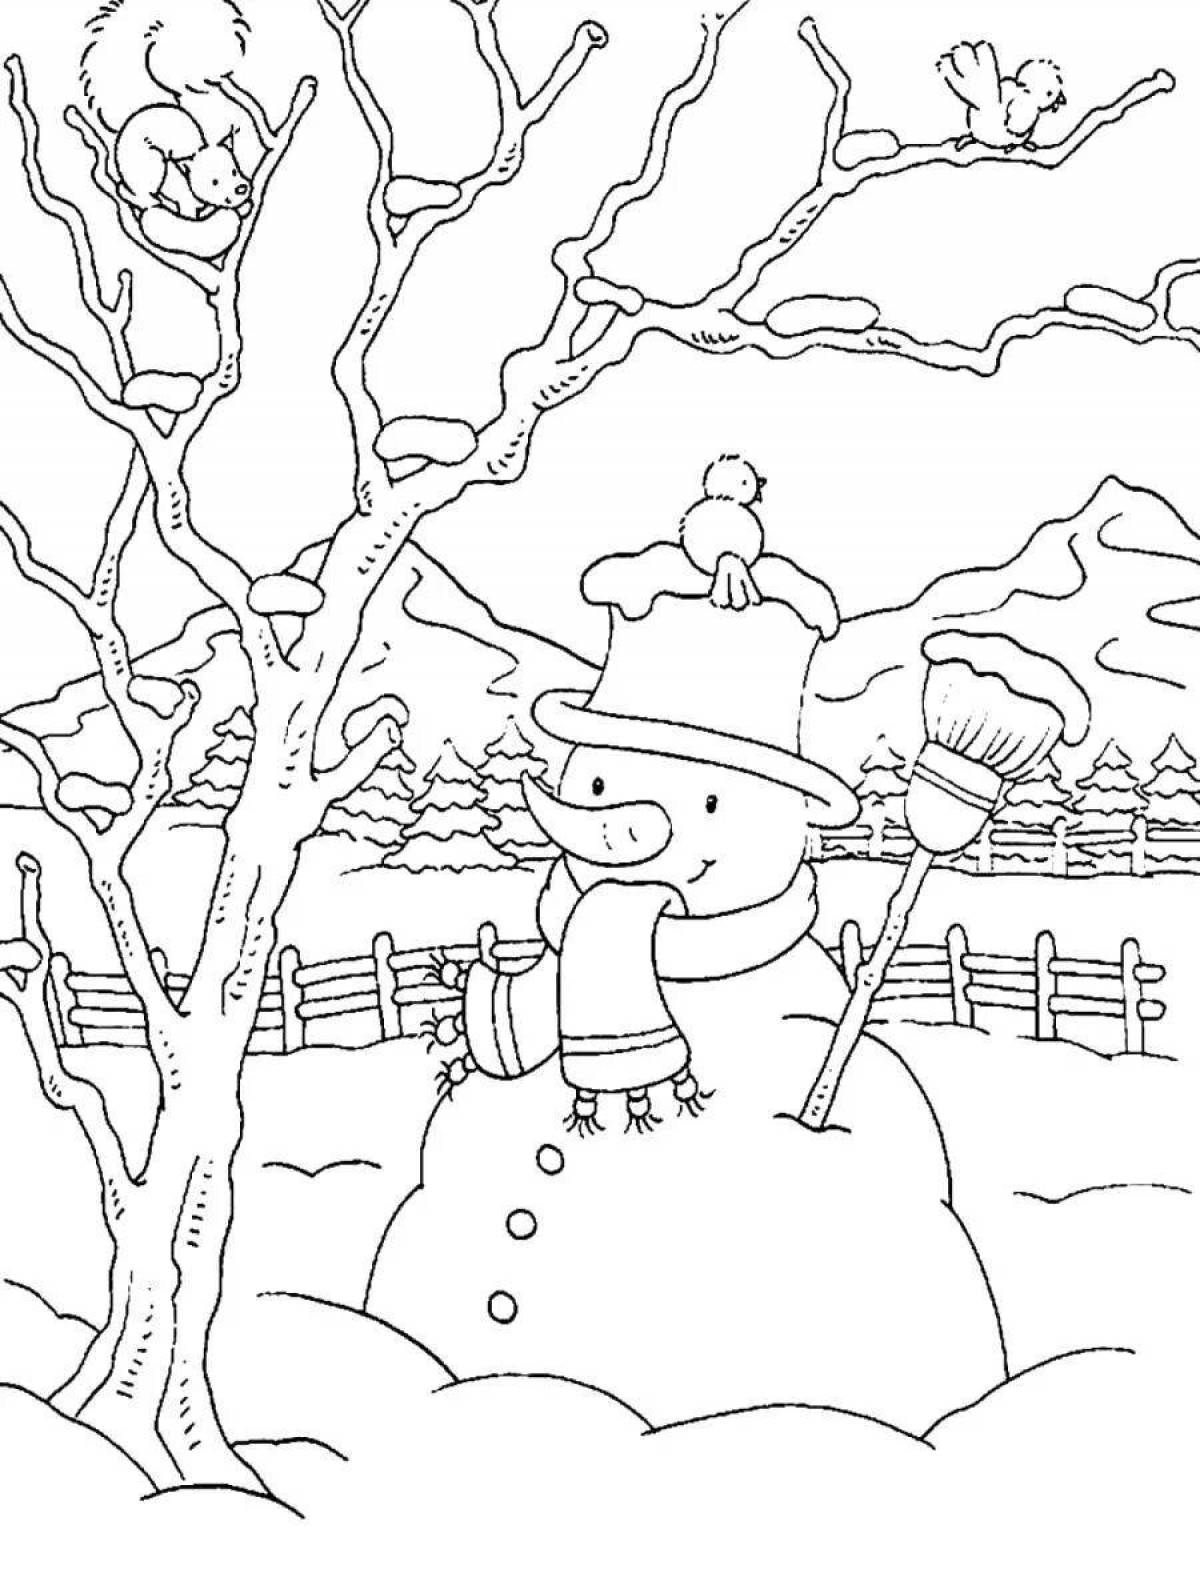 Раскраска величественный зимний пейзаж для детей 6-7 лет